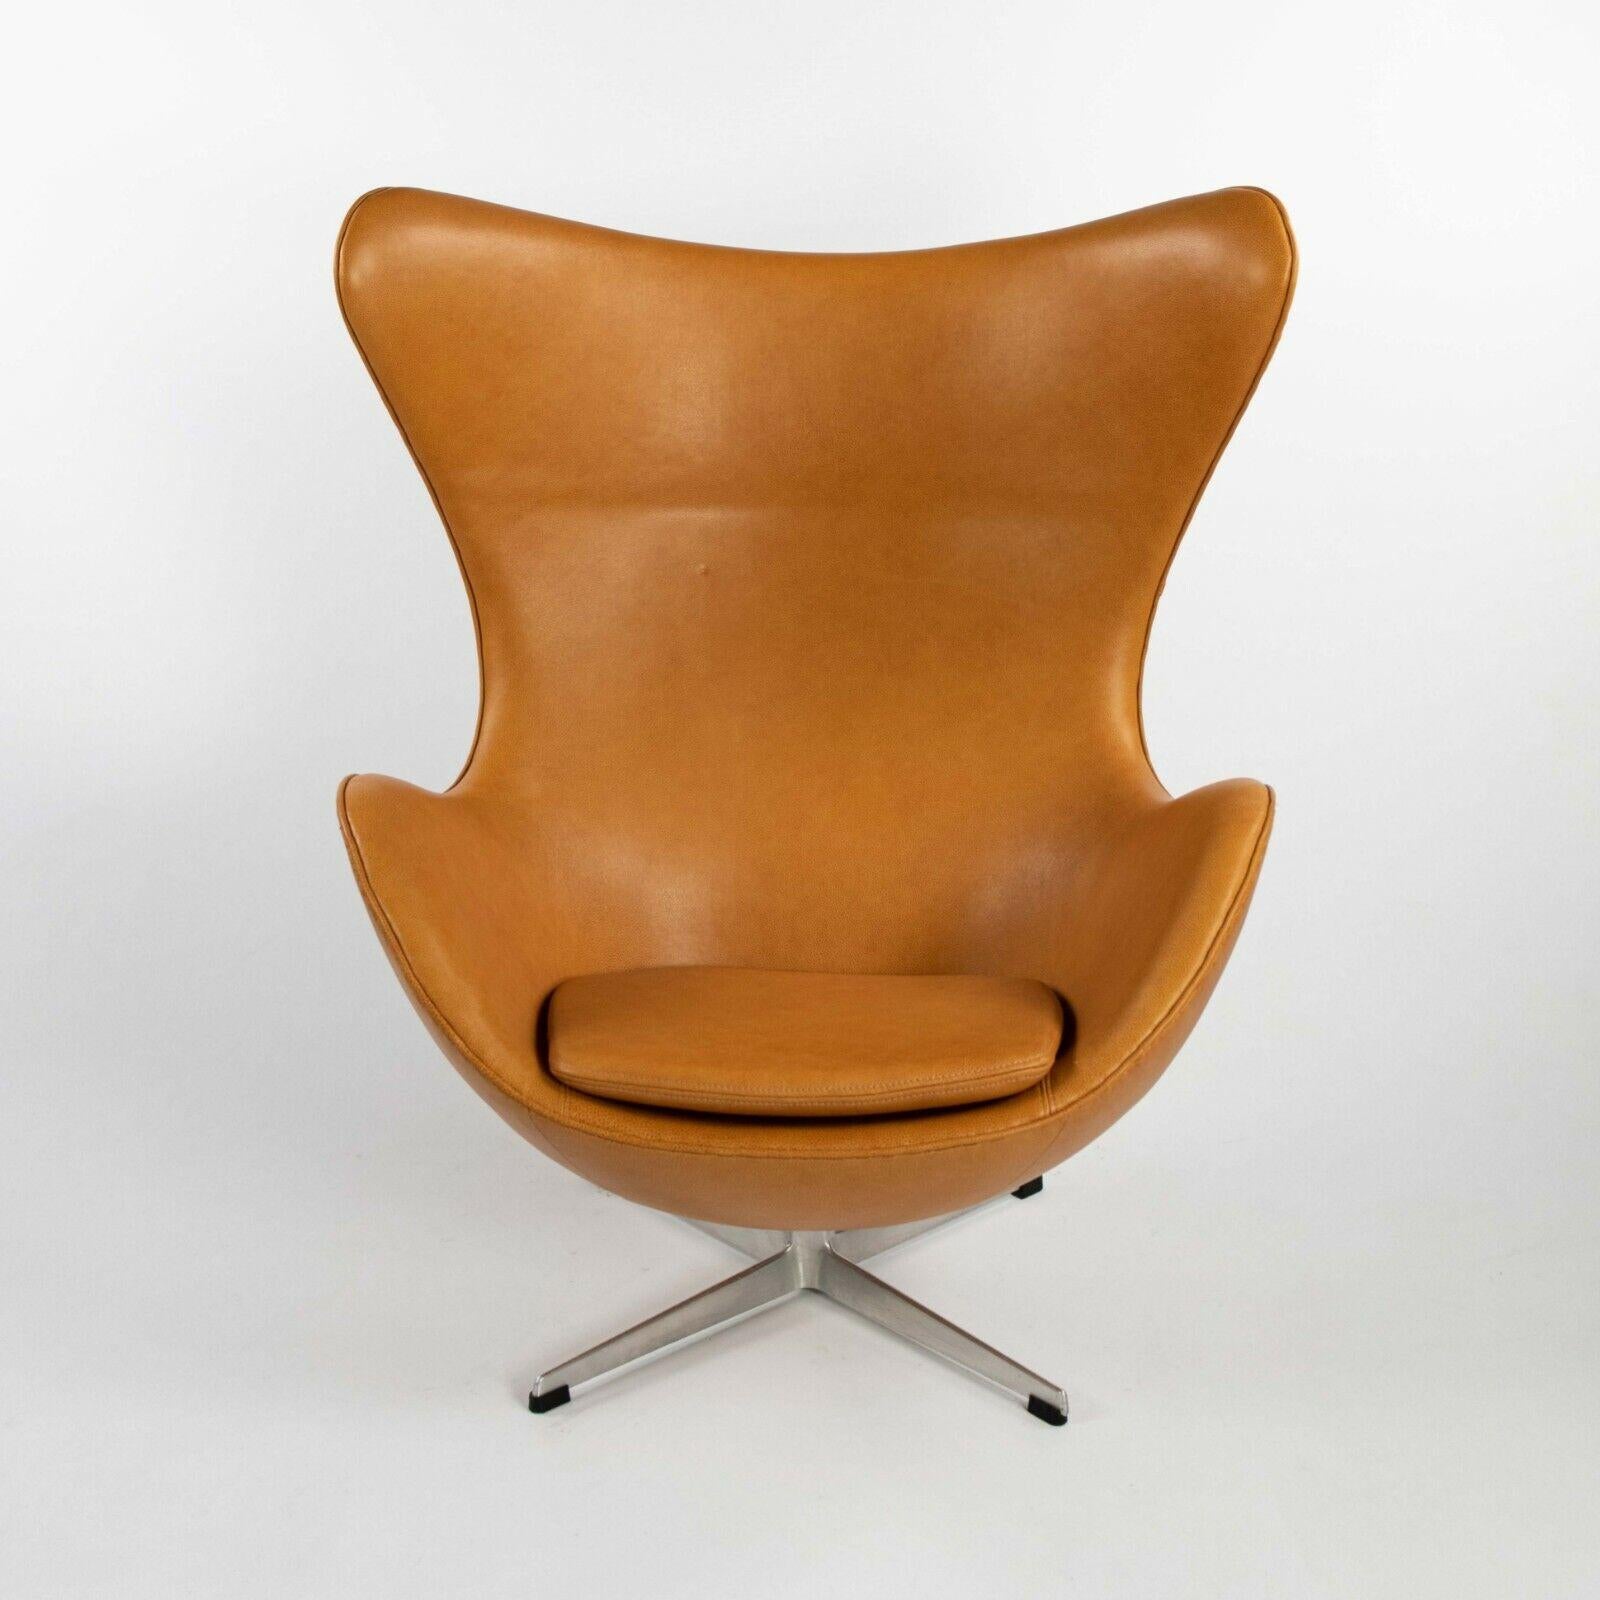 Aluminum 1959 Arne Jacobsen for Fritz Hansen Egg Chair & Ottoman in Tan / Cognac Leather For Sale